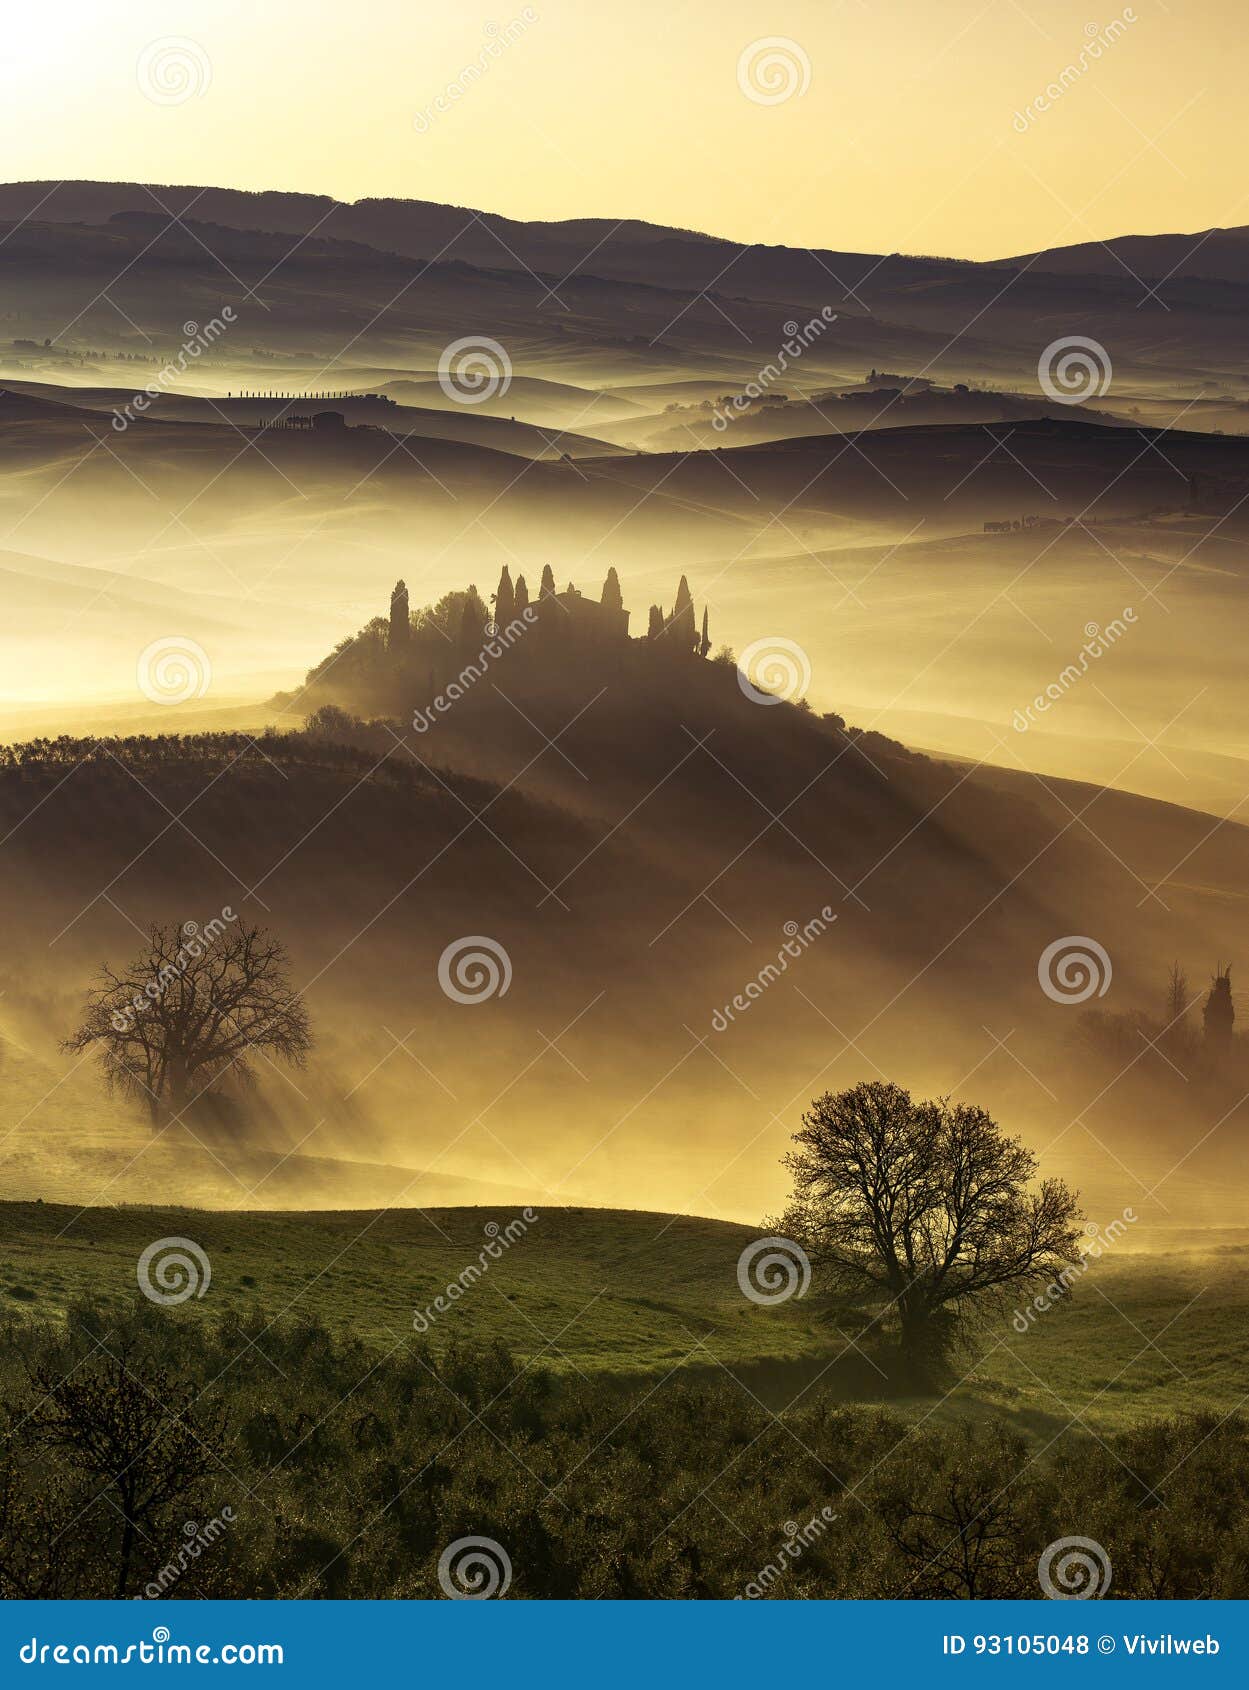 dreamlike dawn on misty hills